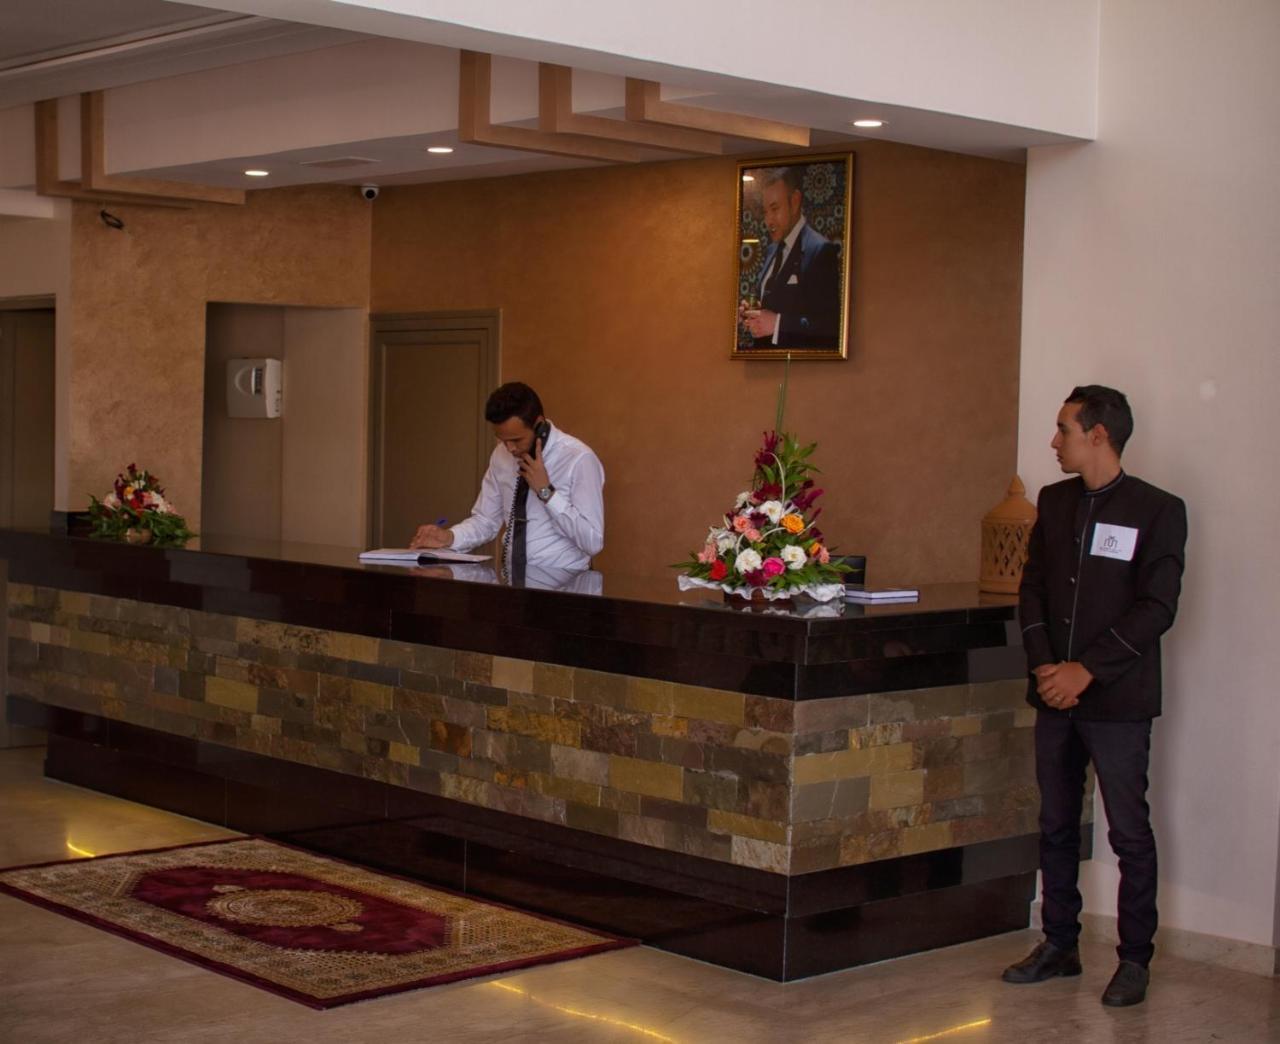 Hotel Al Mamoun Inezgane Екстер'єр фото